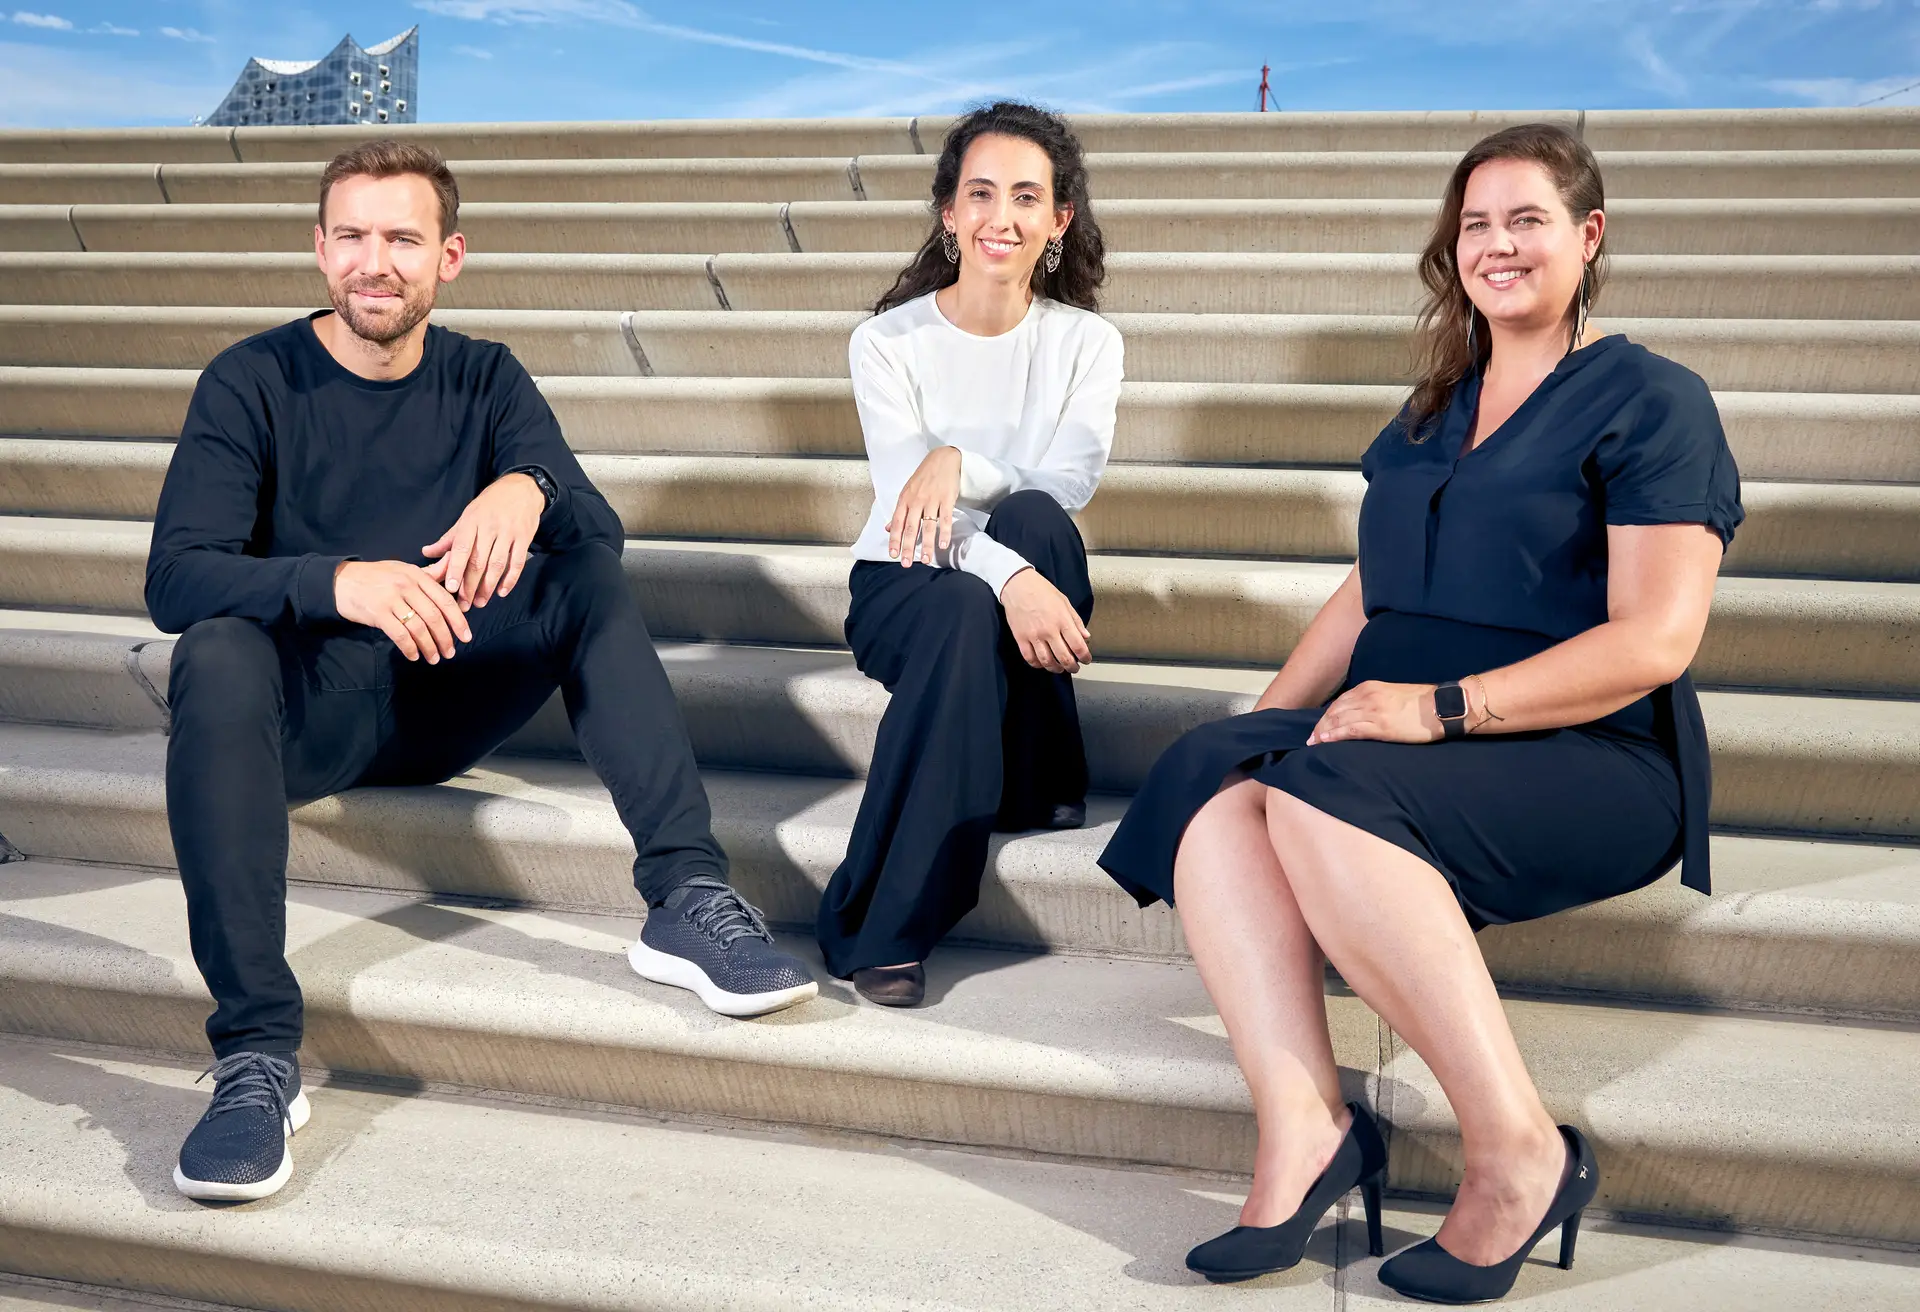 Jonathan Roberz, Luísa Cruz e Katelijne Bekers são os fundadores da MicroHarvest.